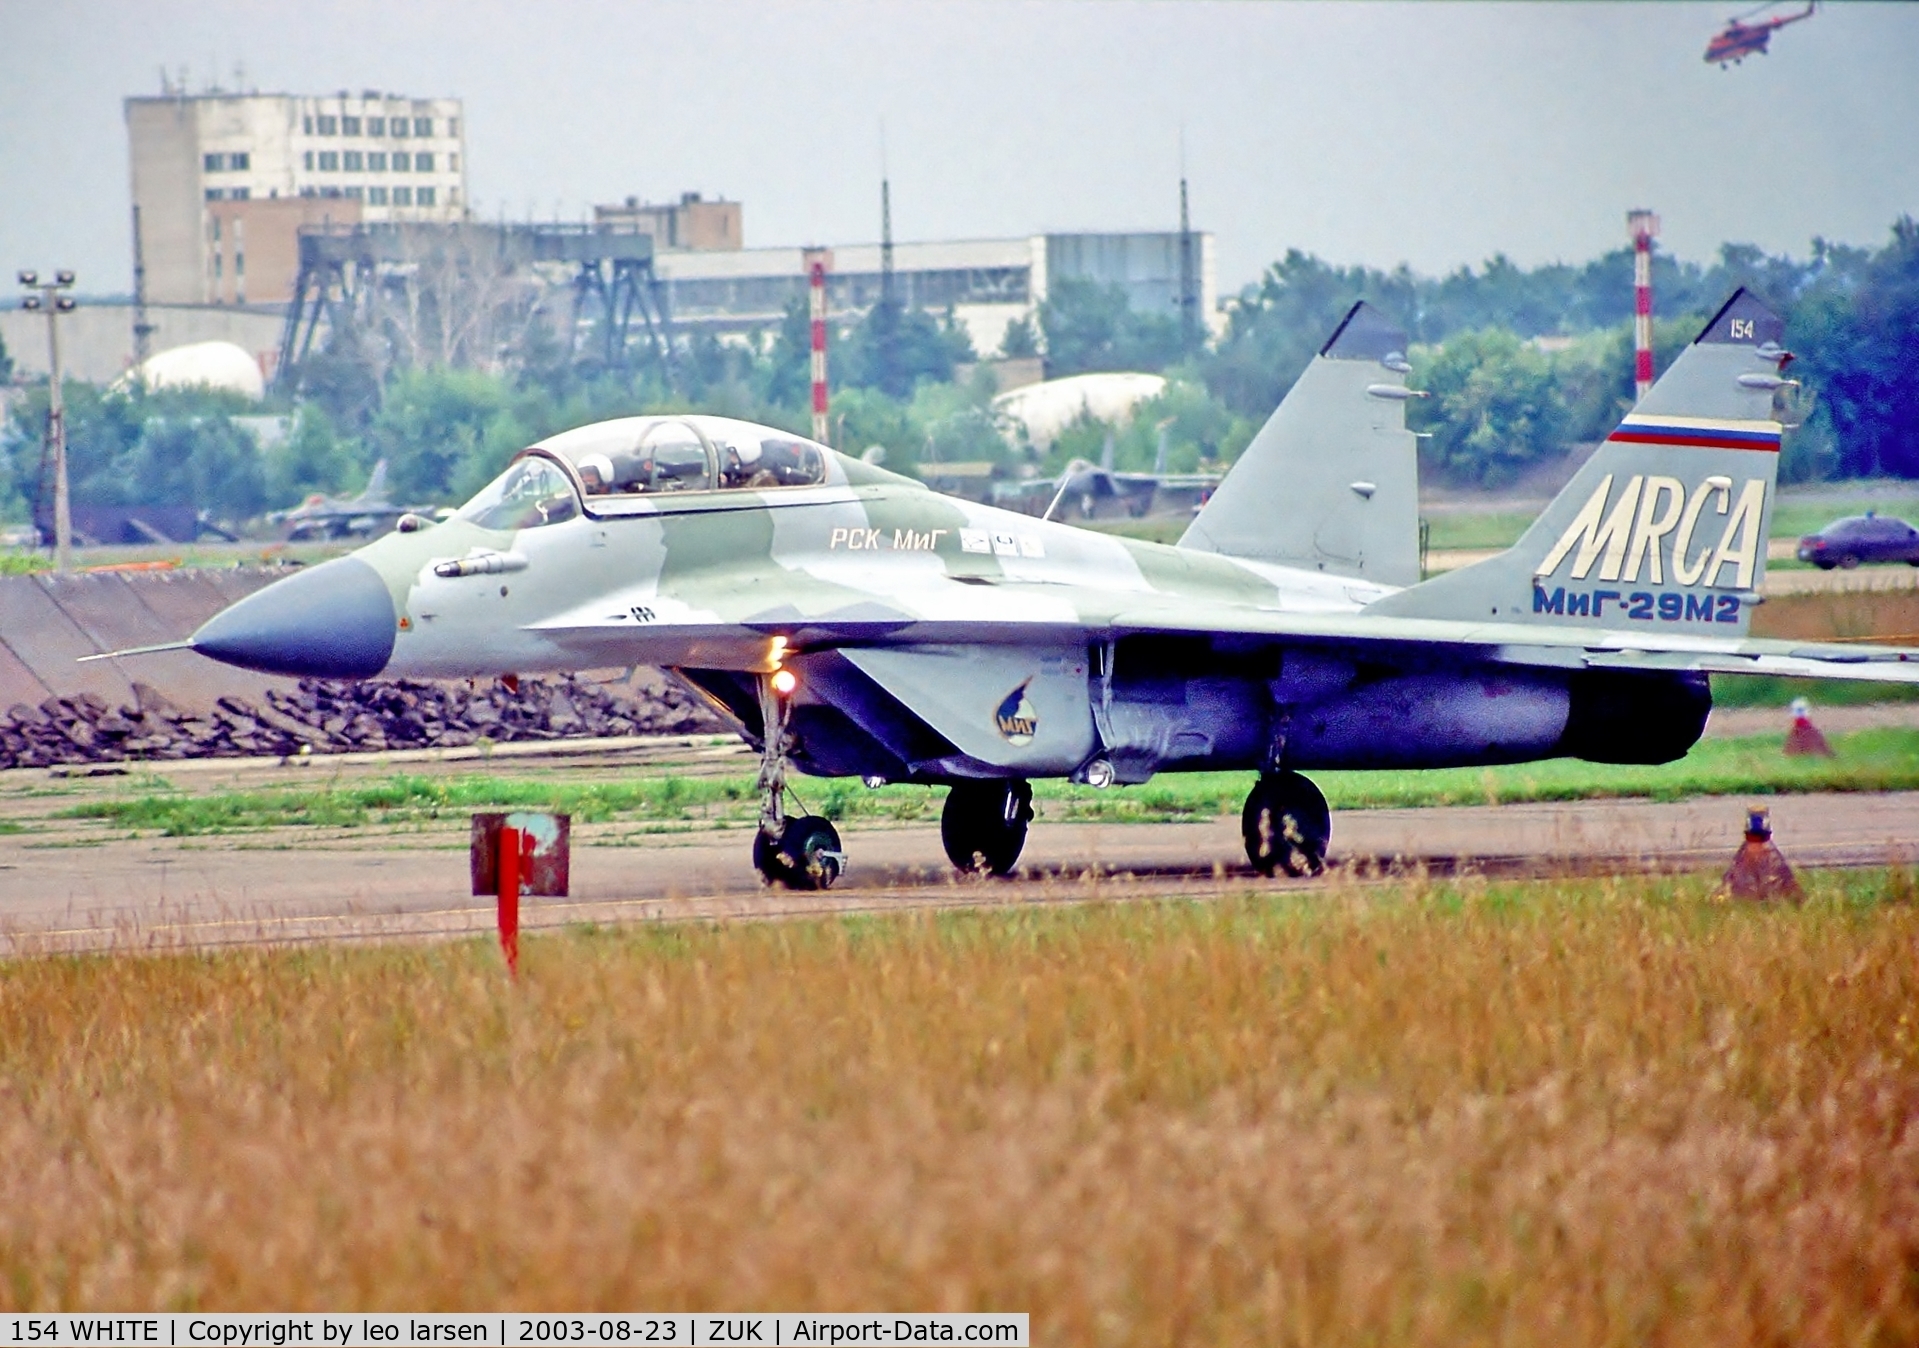 154 WHITE, Mikoyan-Gurevich MiG-29M2 C/N 2960905554, Zhukovsky 23.8.2003